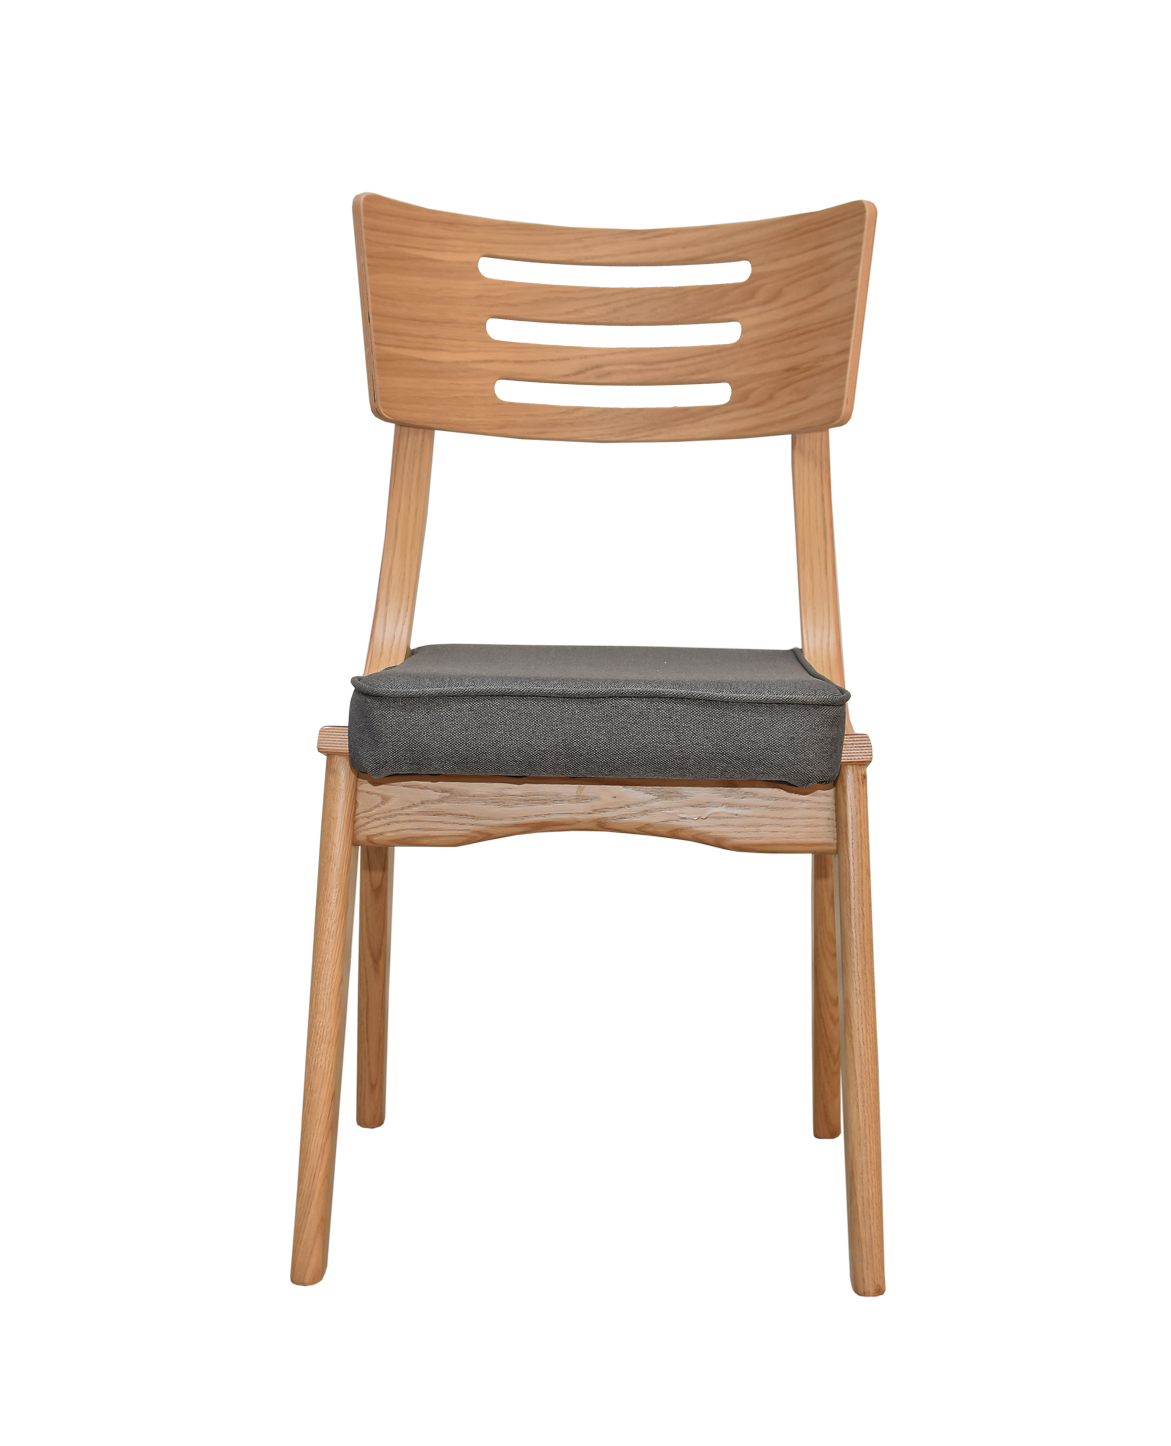 RIO | כסא עץ מכופף לפינת אוכל עם מושב מרופד